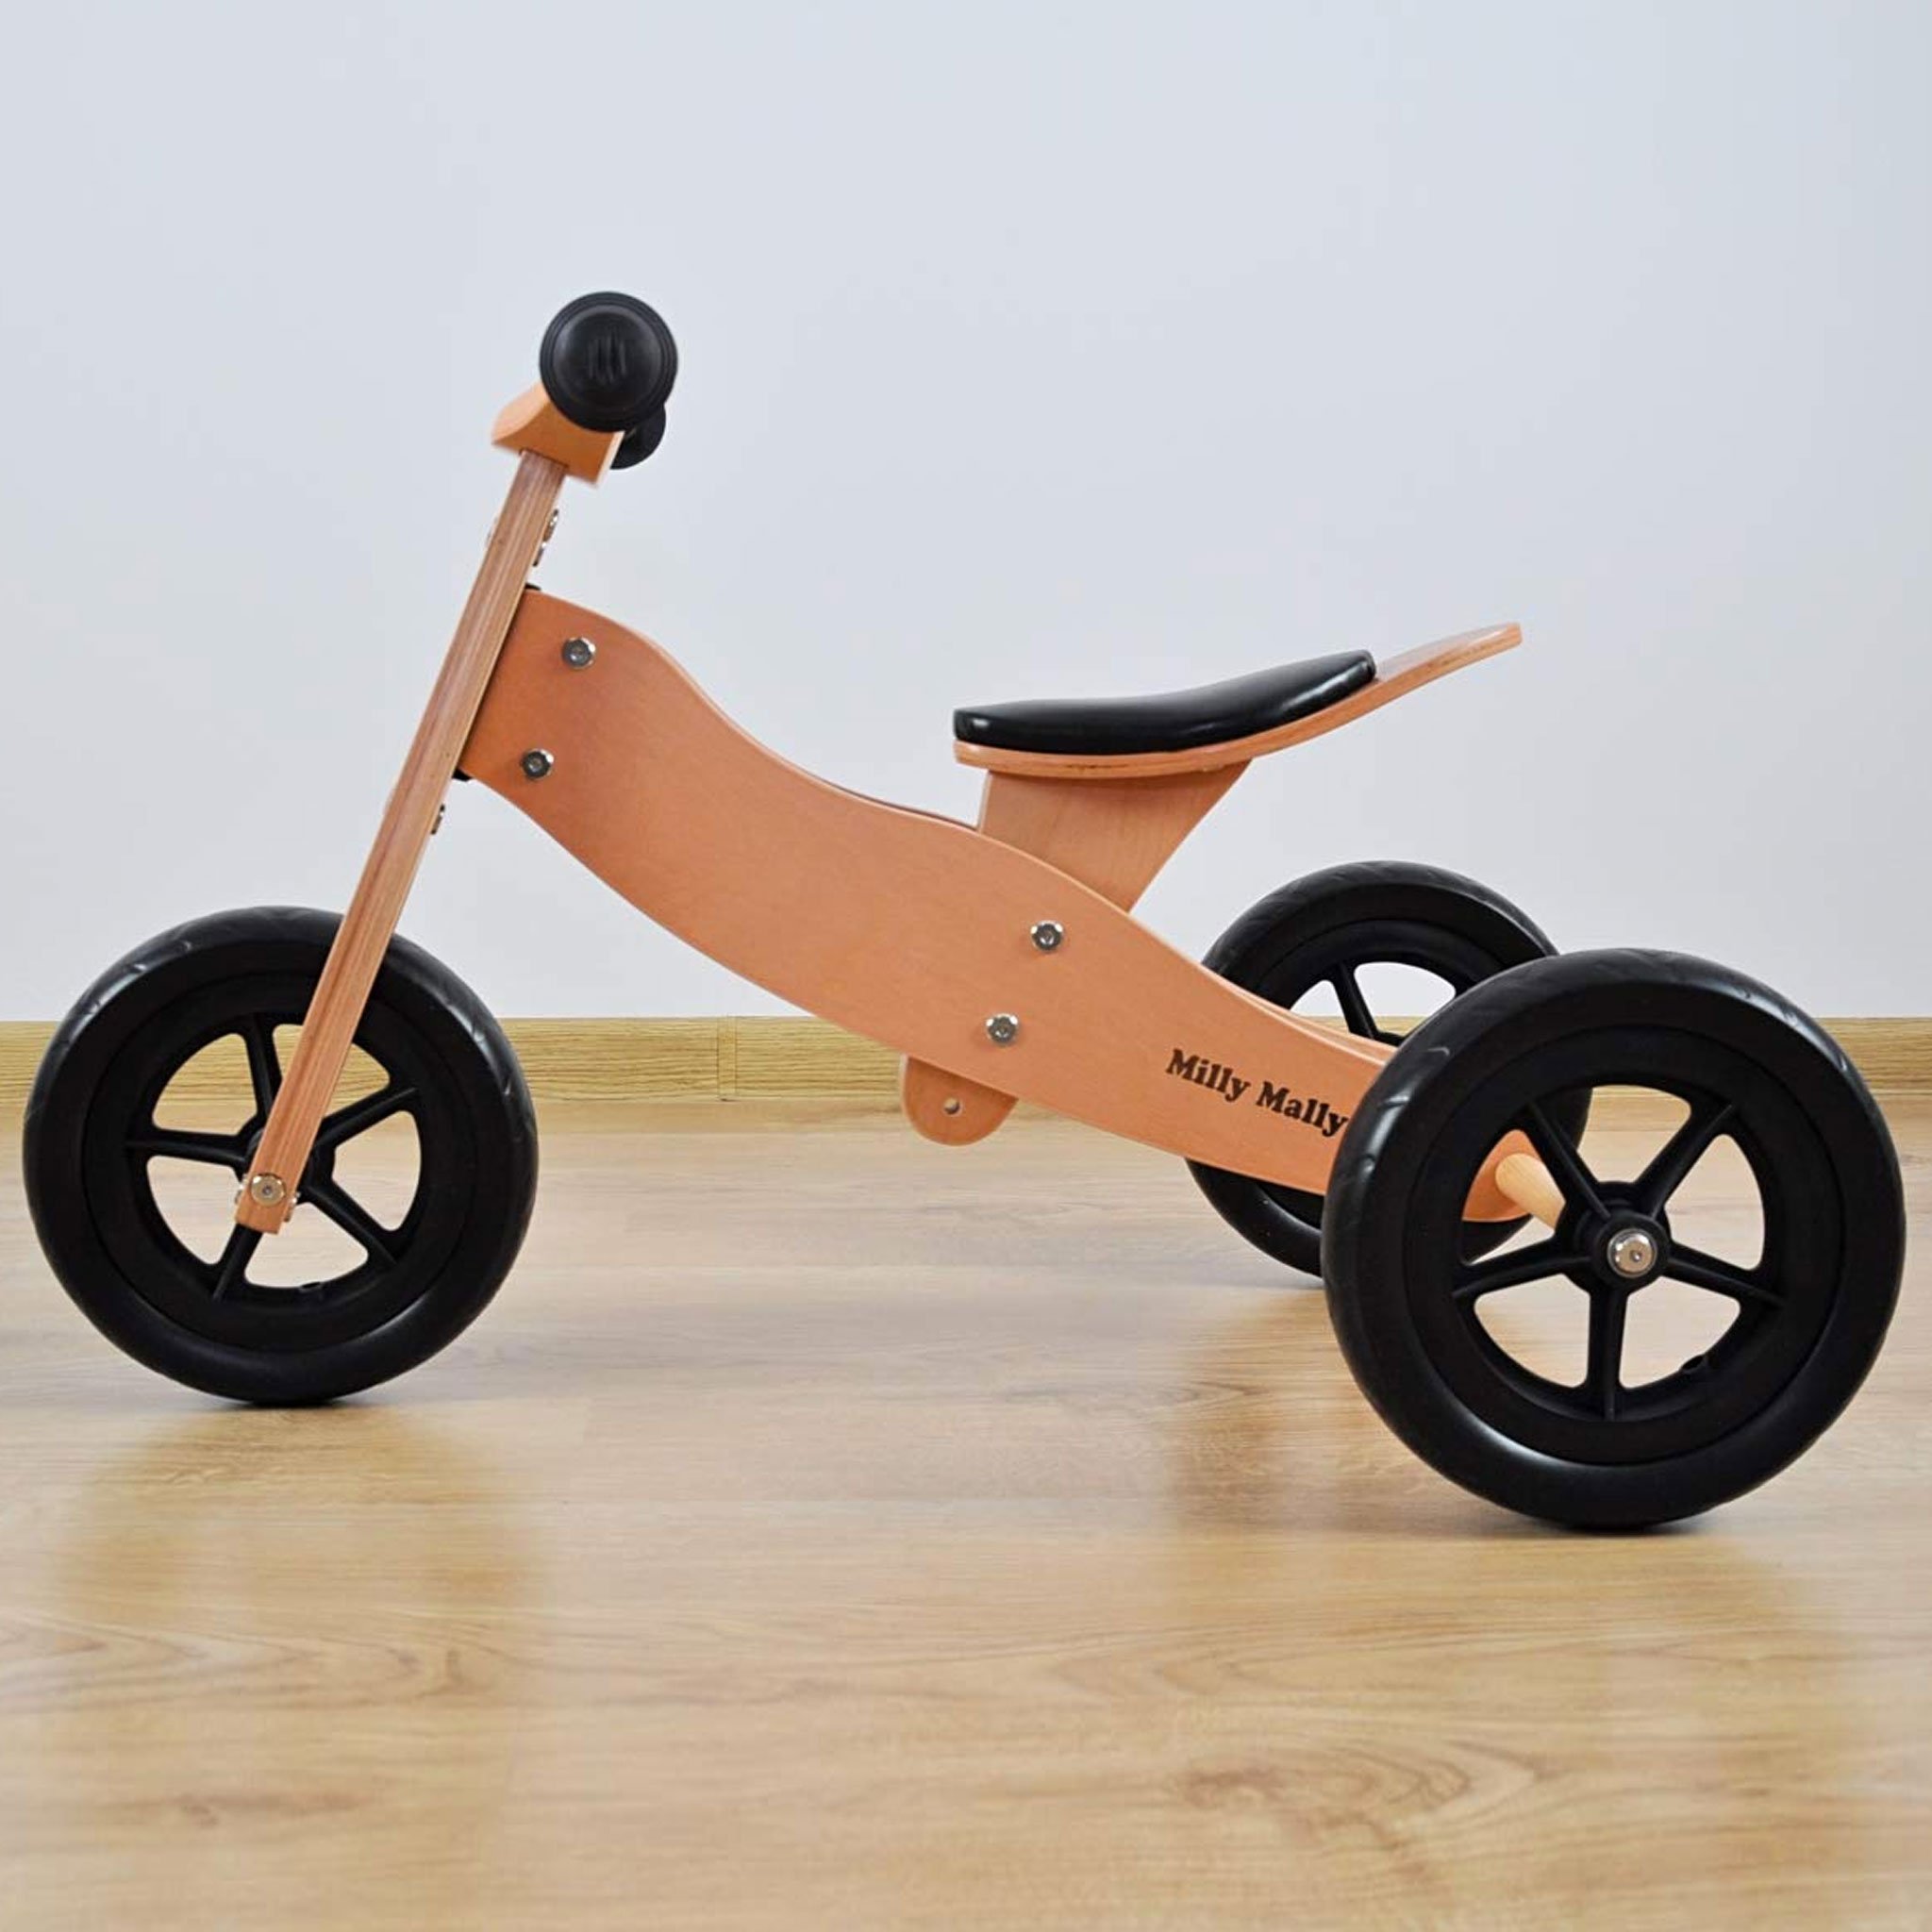 PM2770-triciclo-legno-cavalcabile-ruote-bici-senza-pedali-bambini-equilibrio-balance-bike-giochi-esterno-mobilita-crescita-legno-betulla-all-terrain-trasforma-lato-casa.jpg